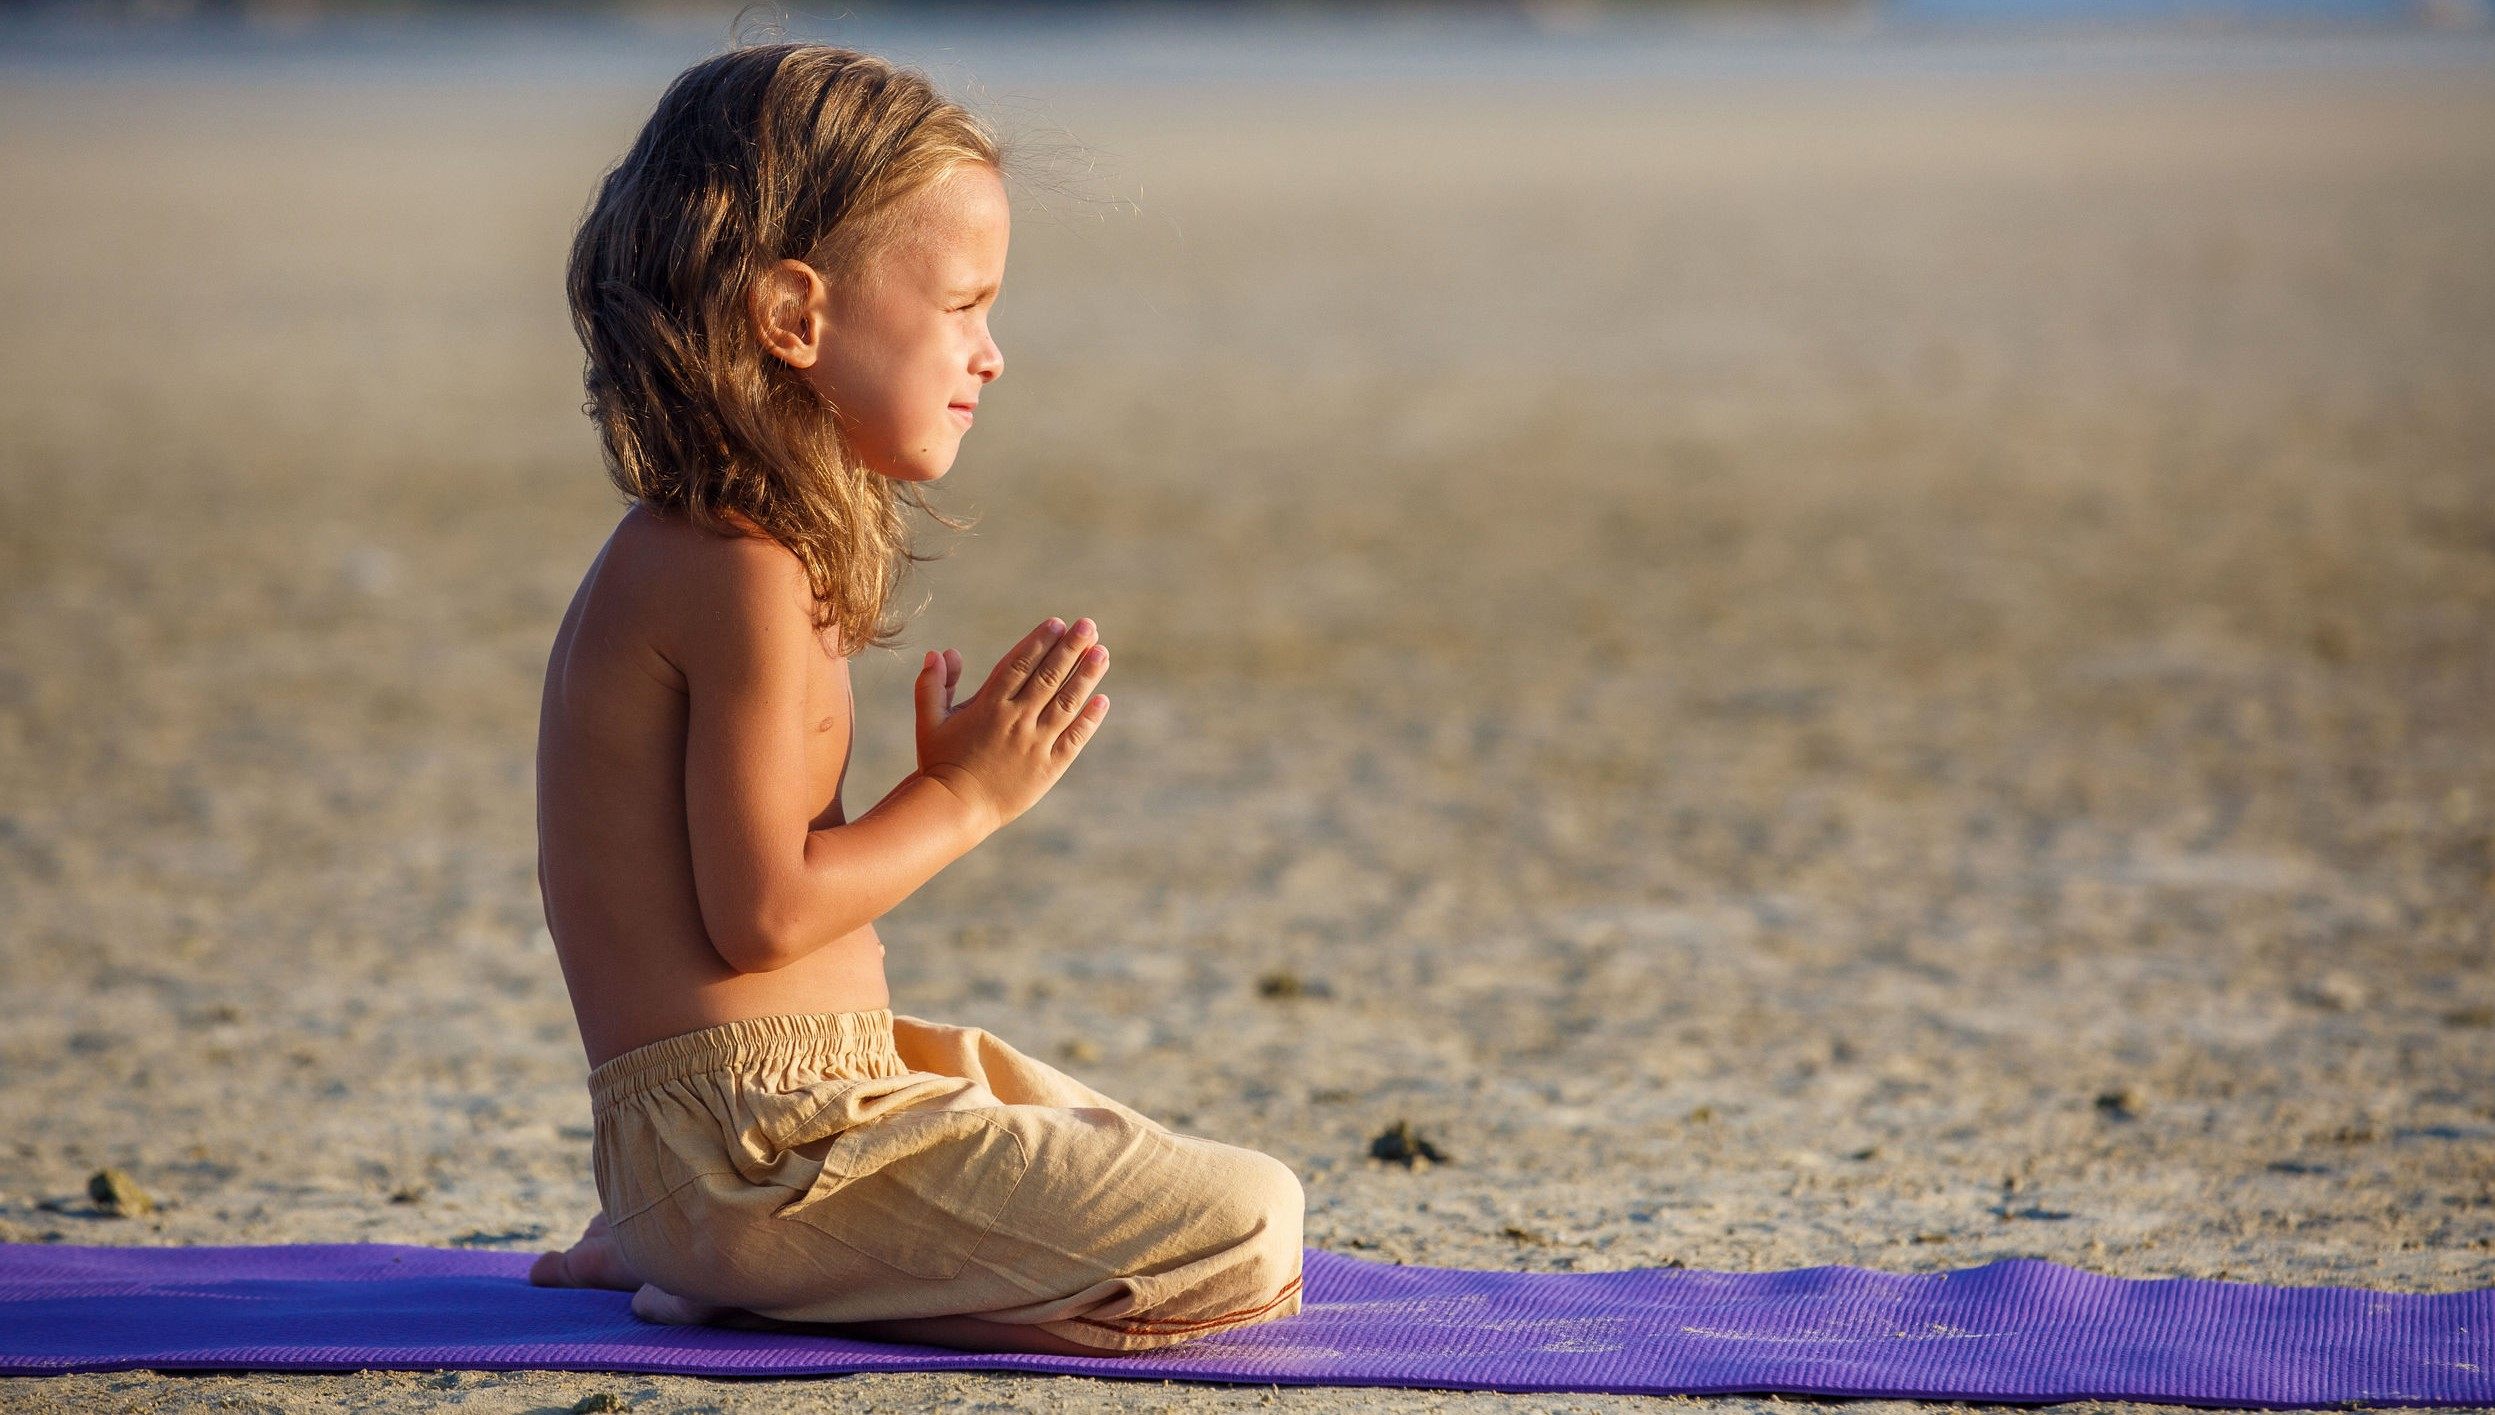 16 Best Yoga Poses For Kids | MomJunction